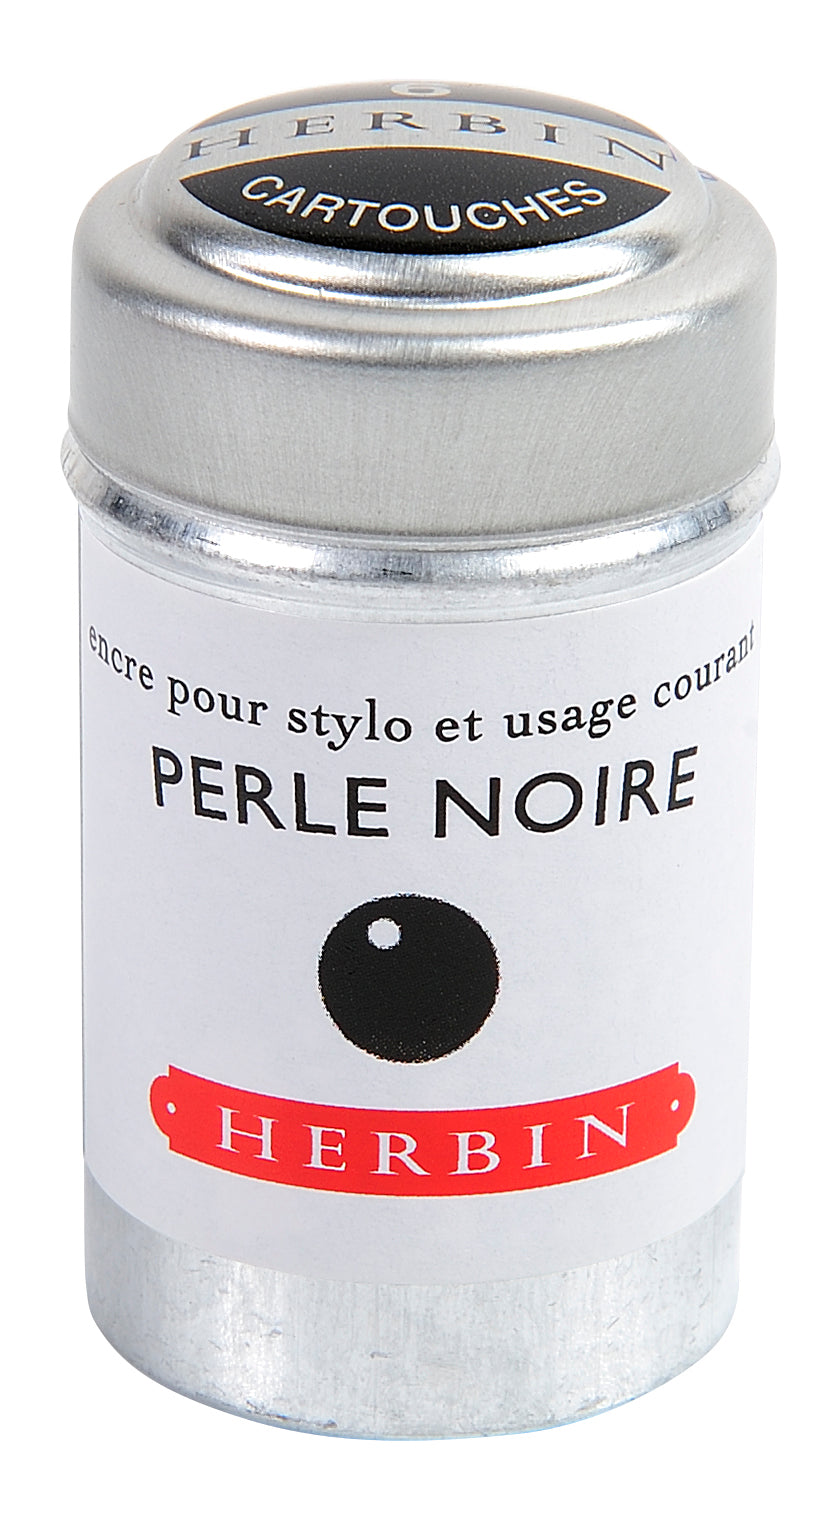 J. Herbin Ink Cartridges ✒︎ J. Herbin tintapatronok